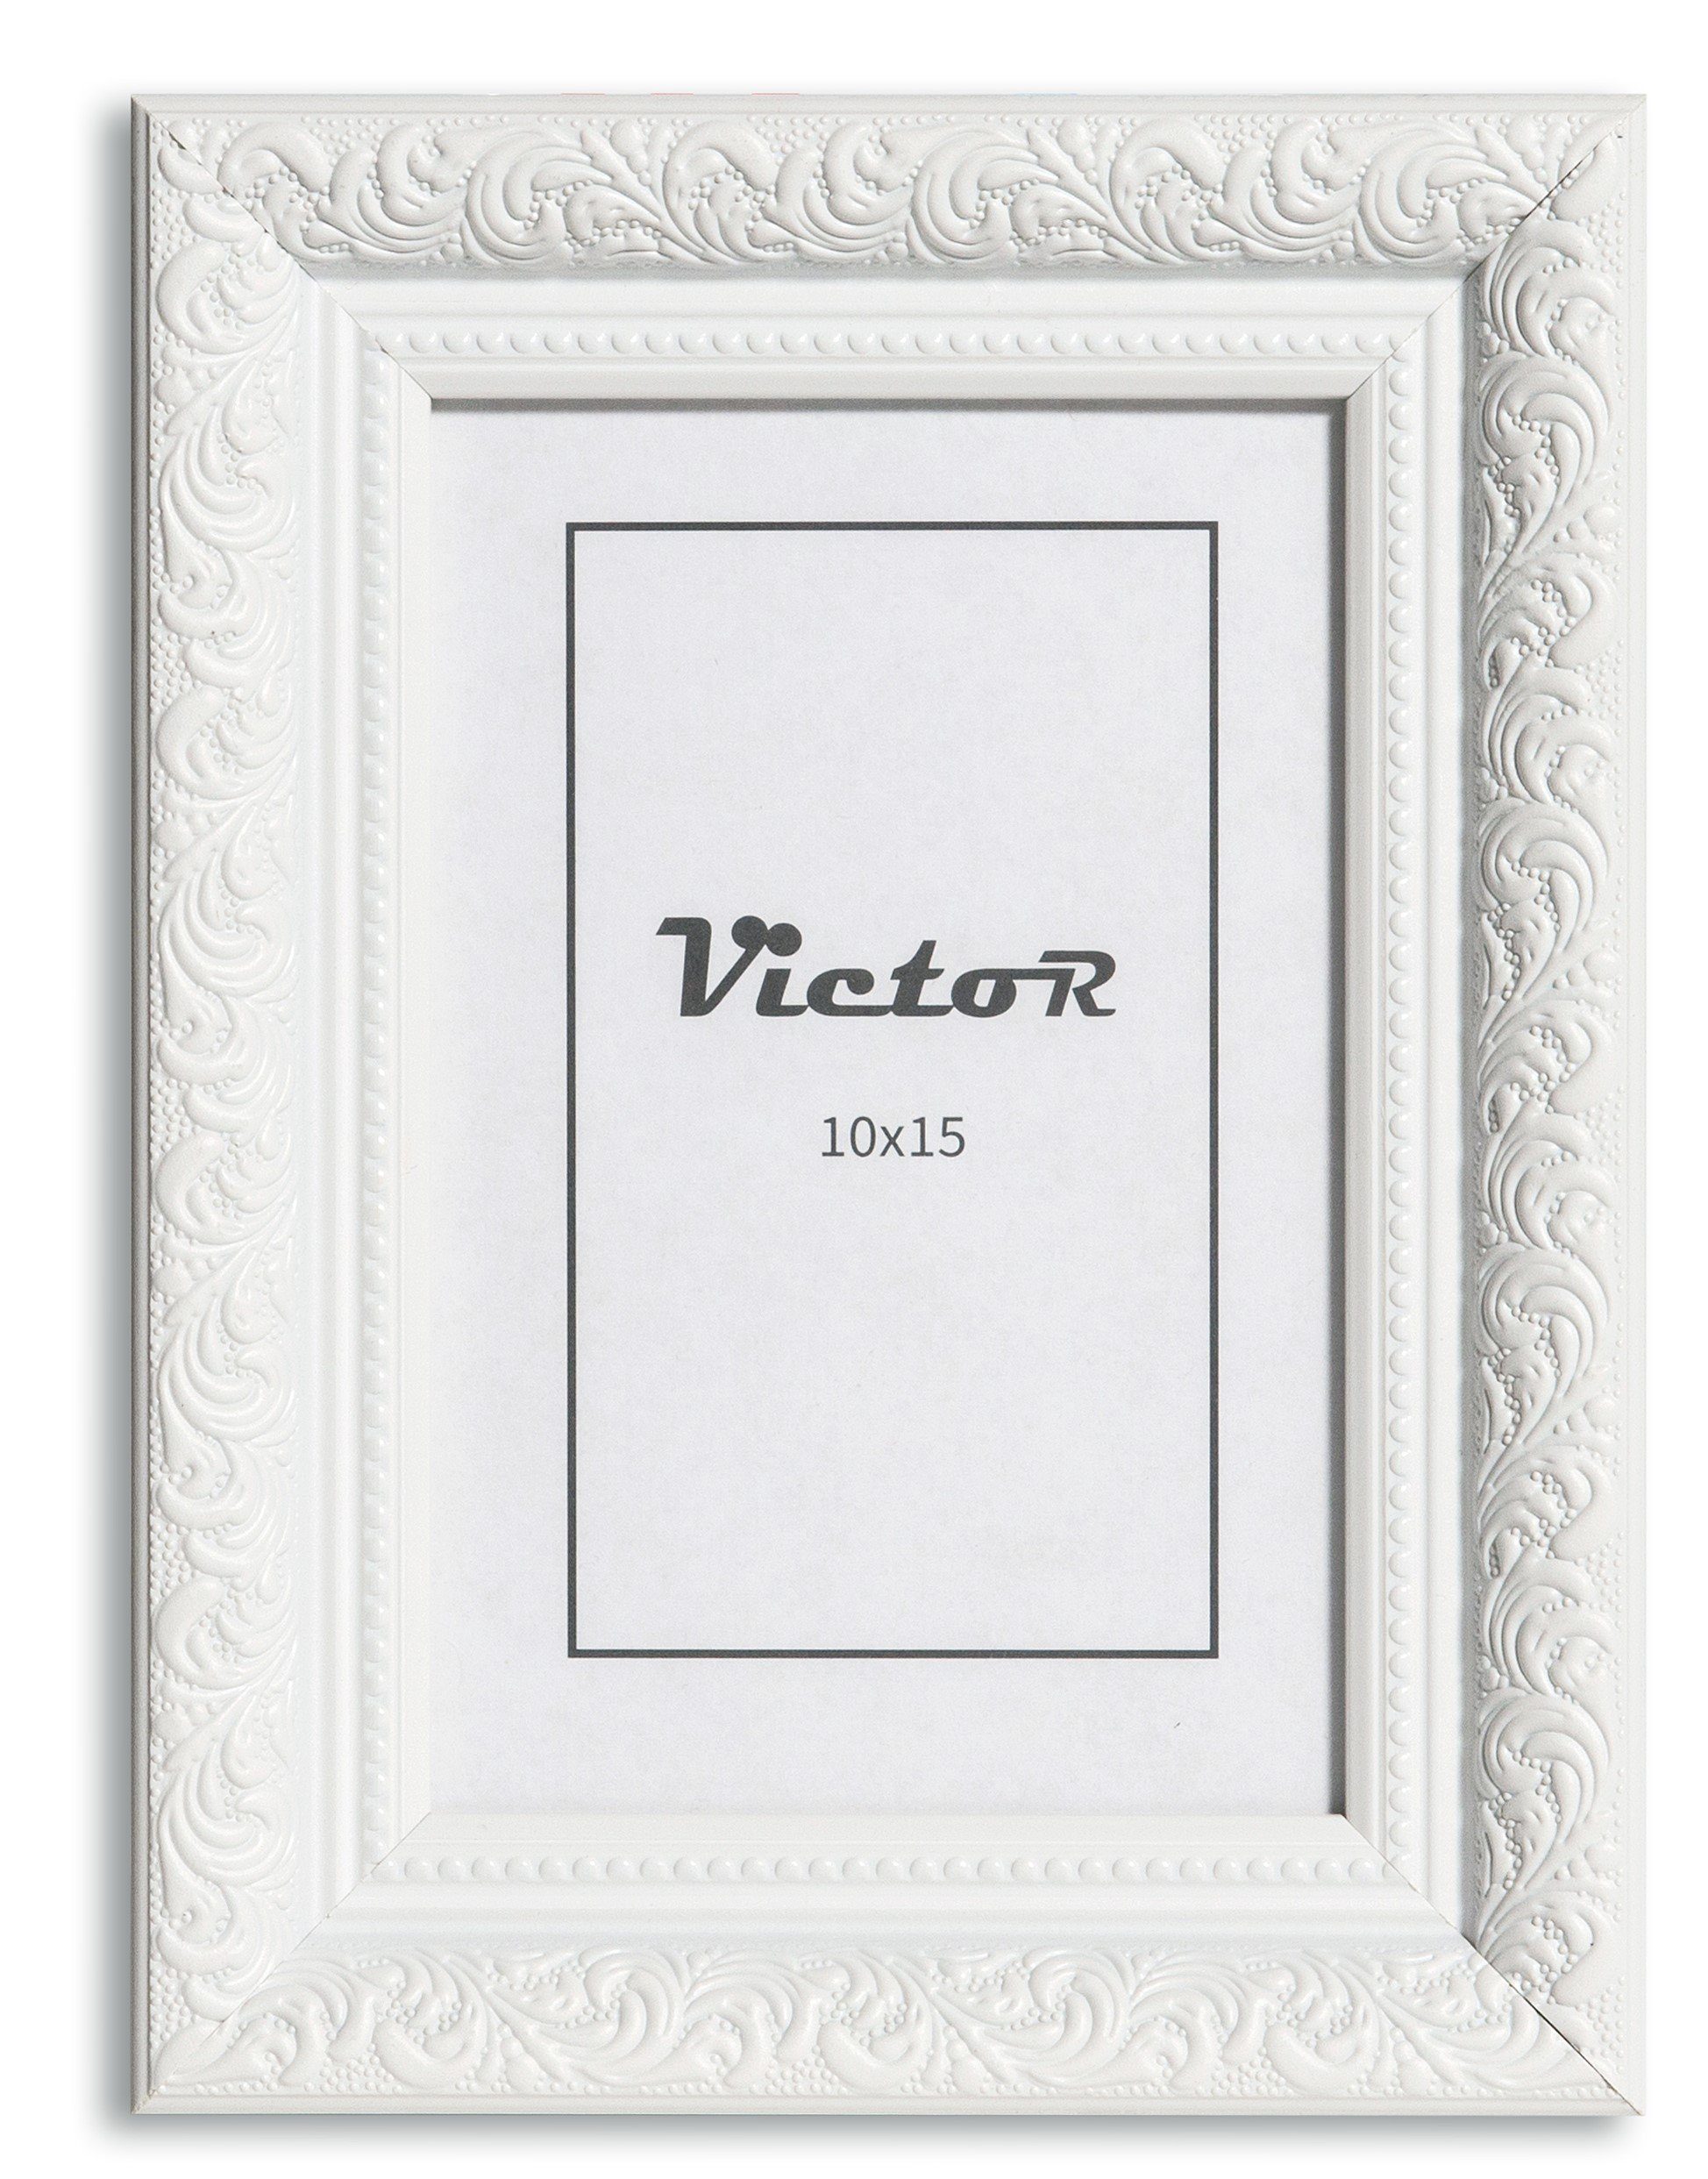 Victor (Zenith) Rubens, Bilderrahmen A6, Bilderrahmen 10x15 Antik Weiß Bilderrahmen cm Barock